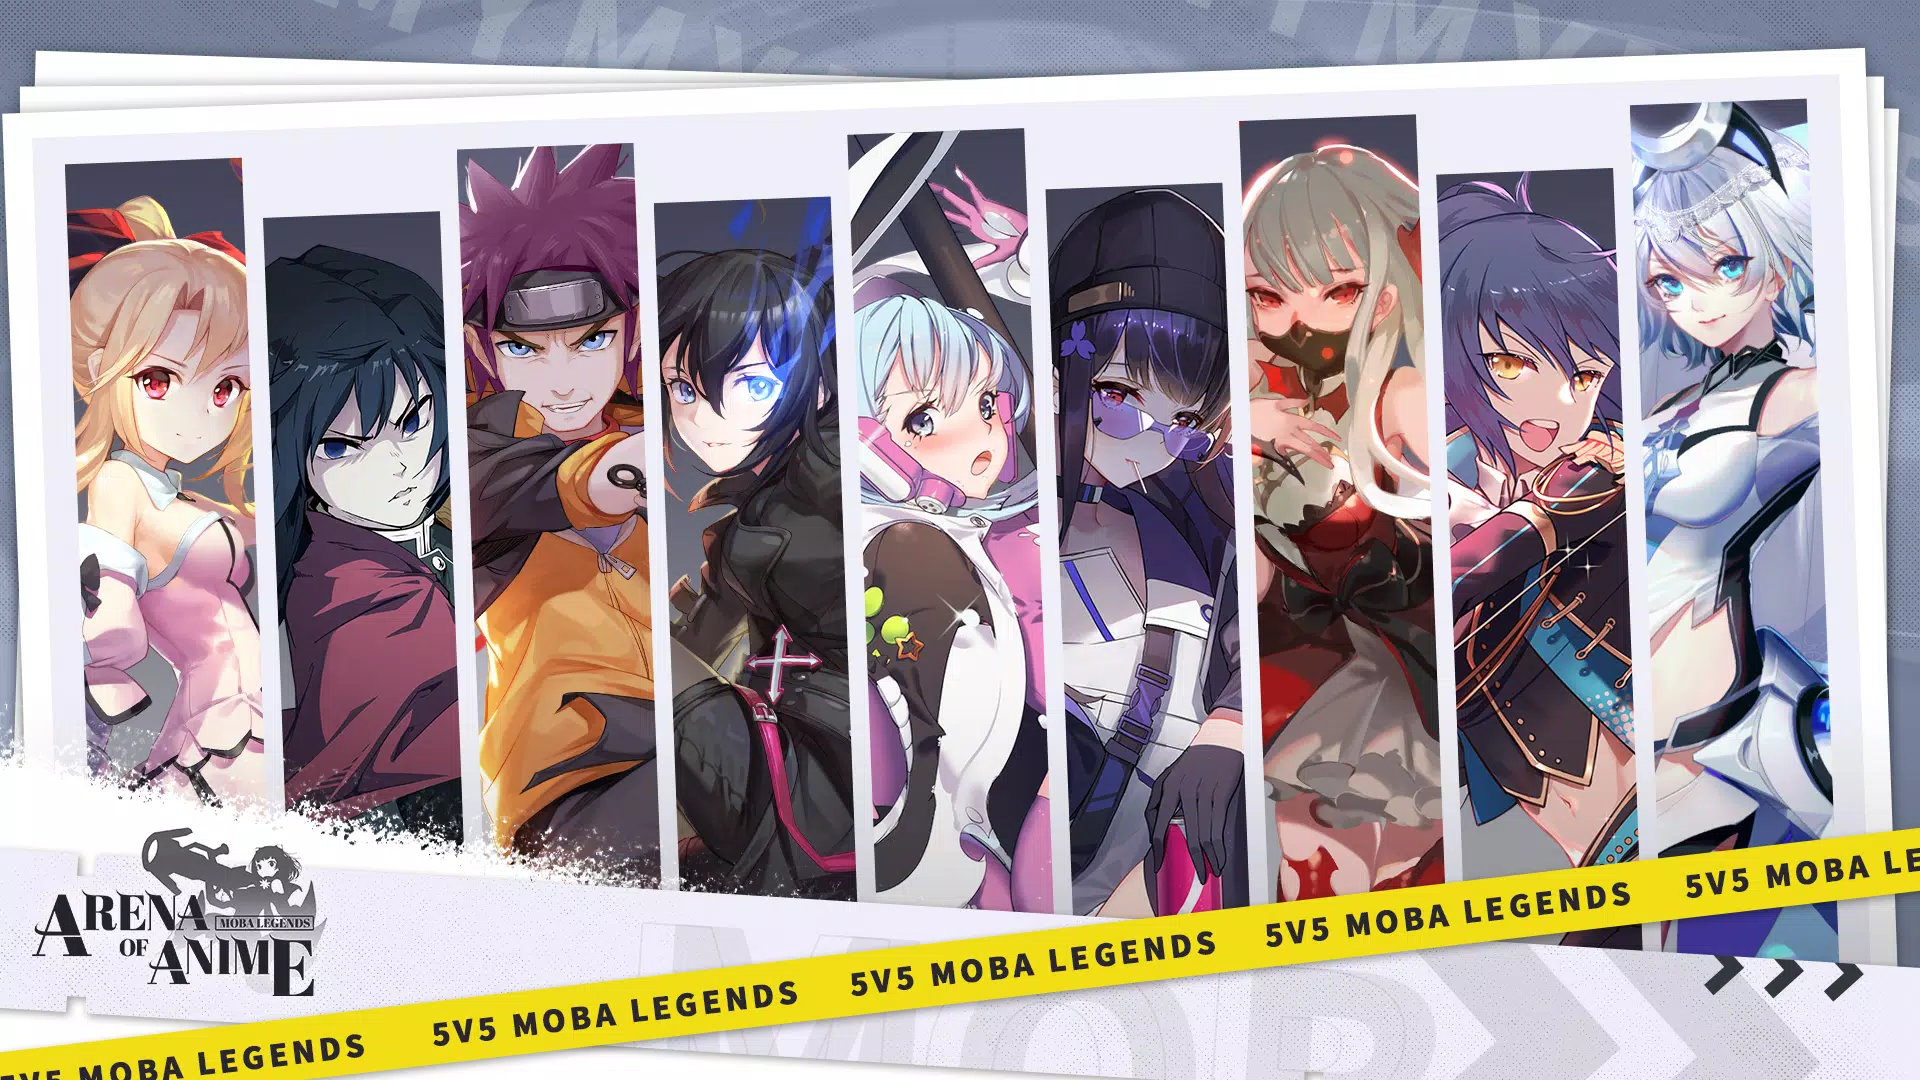 Download do APK de Arena de Batalha de Anime: 3x3 para Android